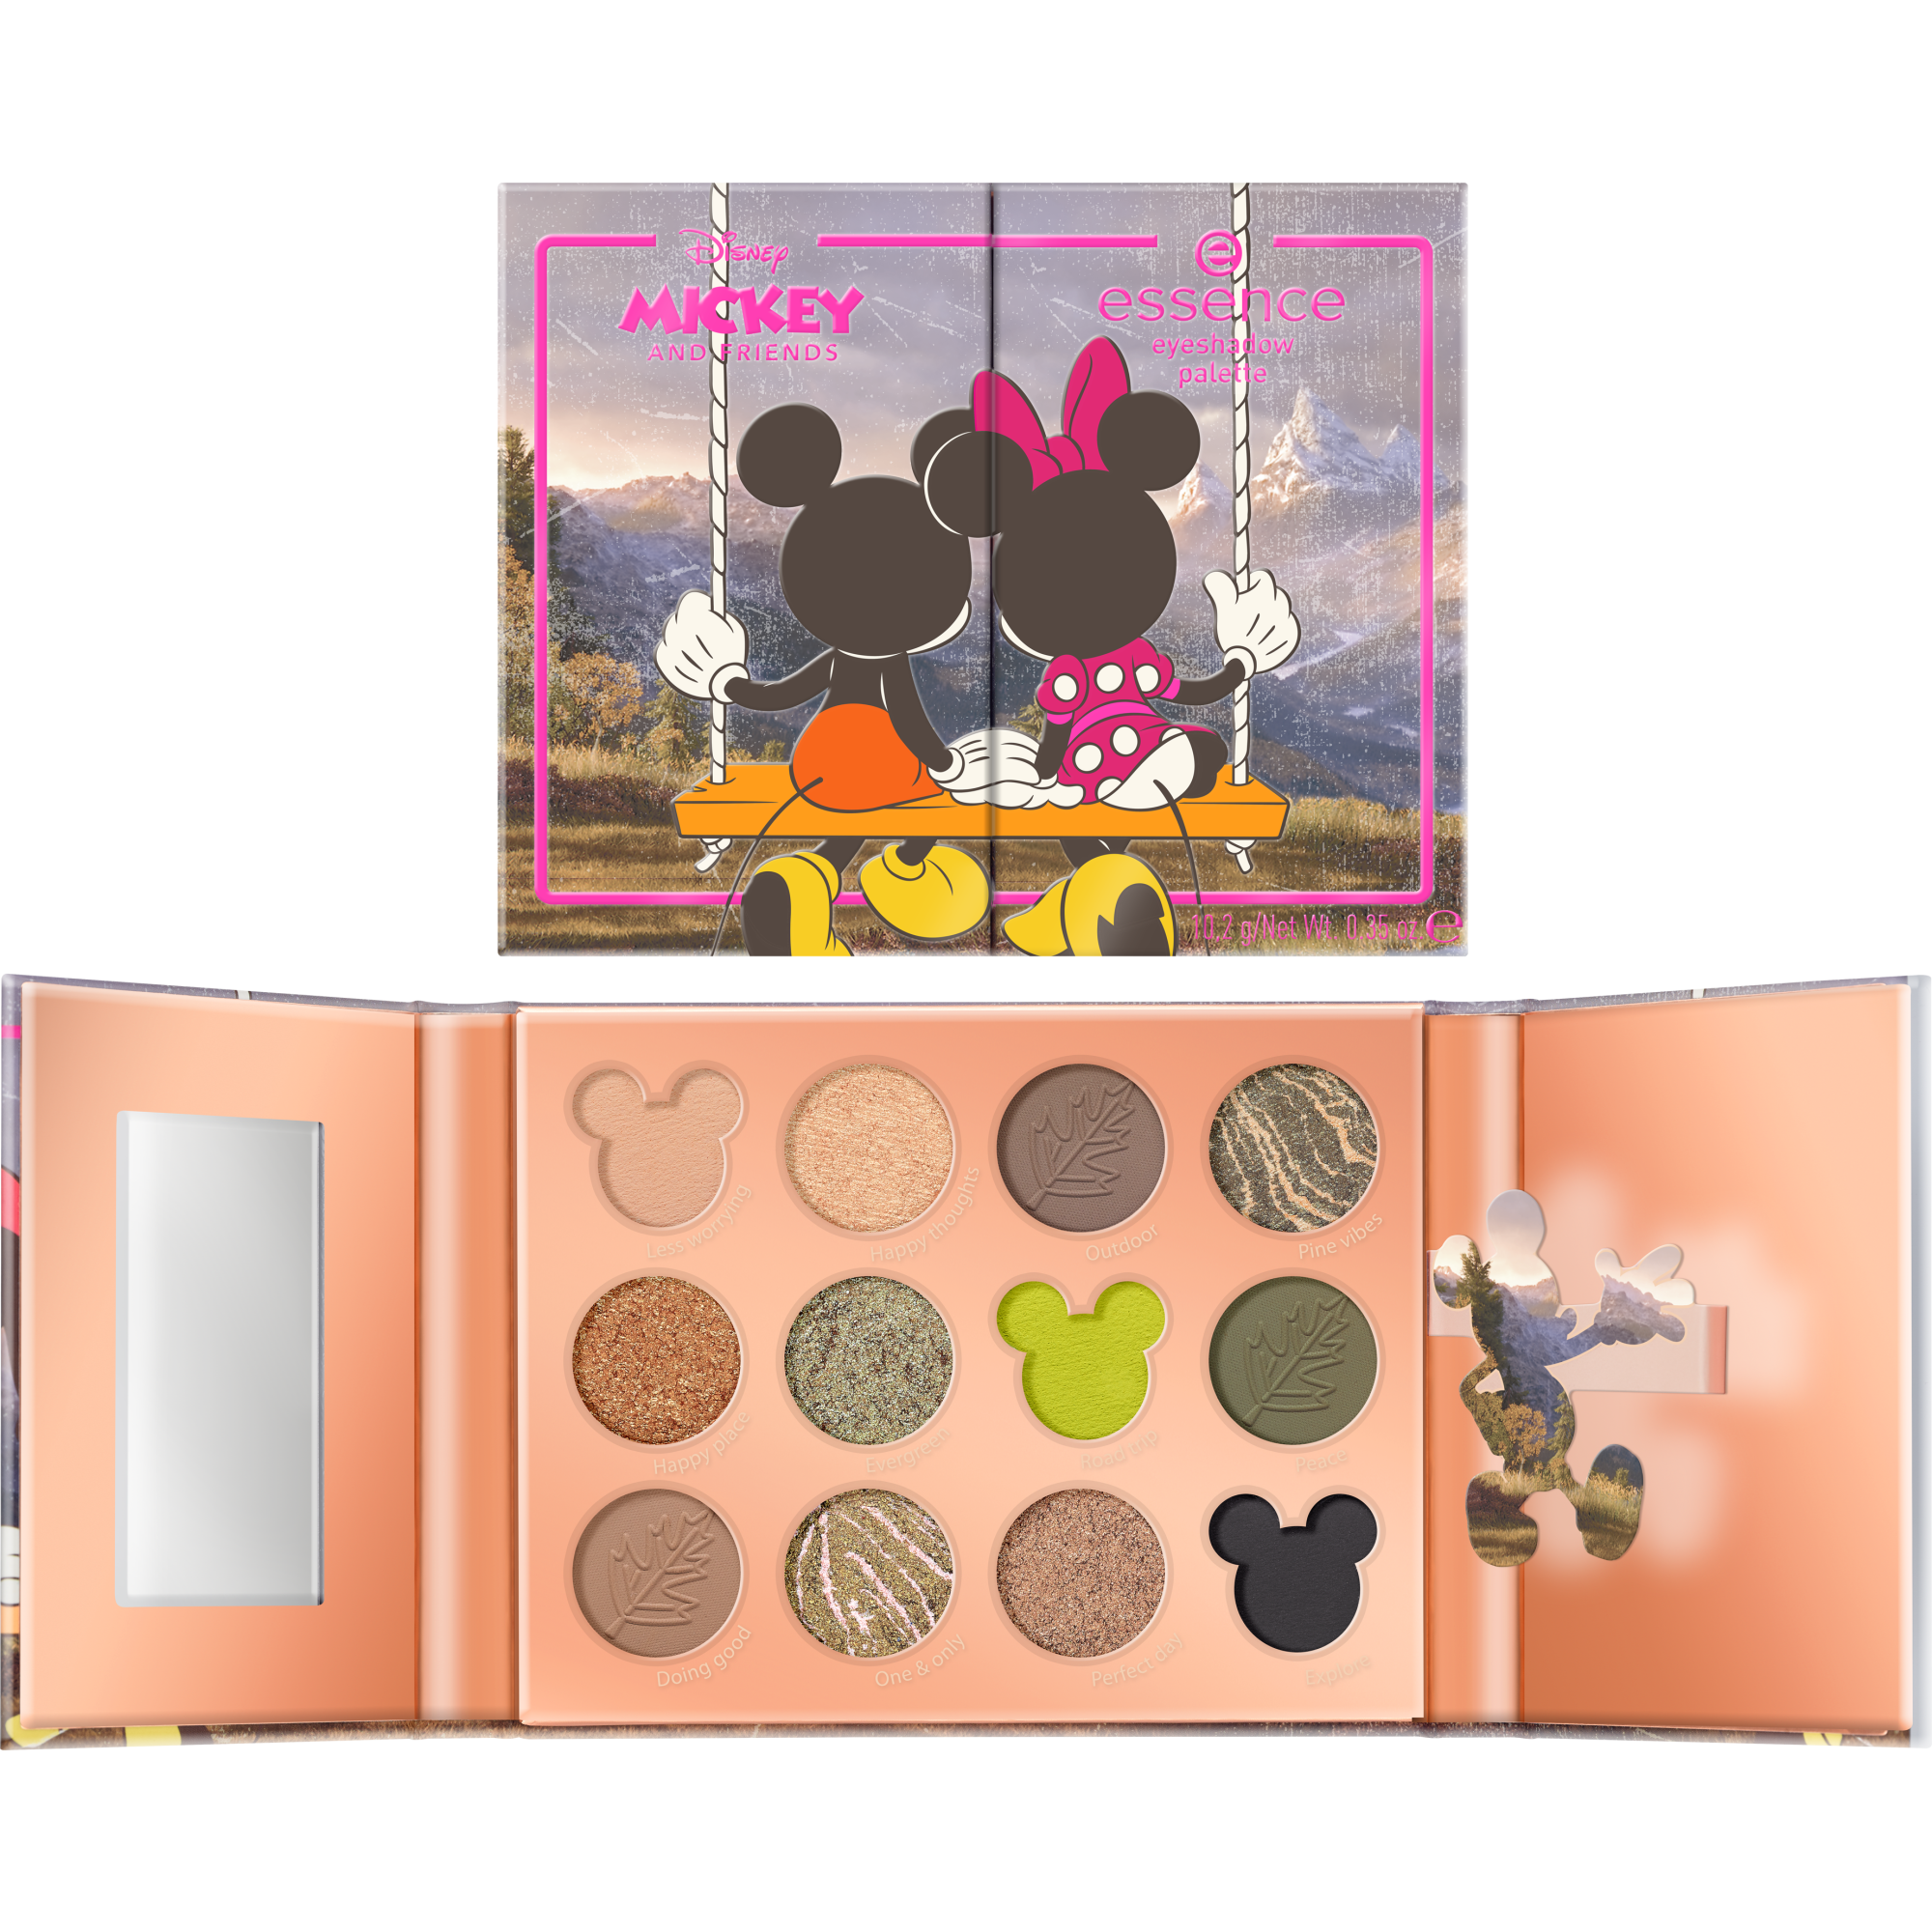 Paleta de sombras de ojos Mickey and Friends de Disney